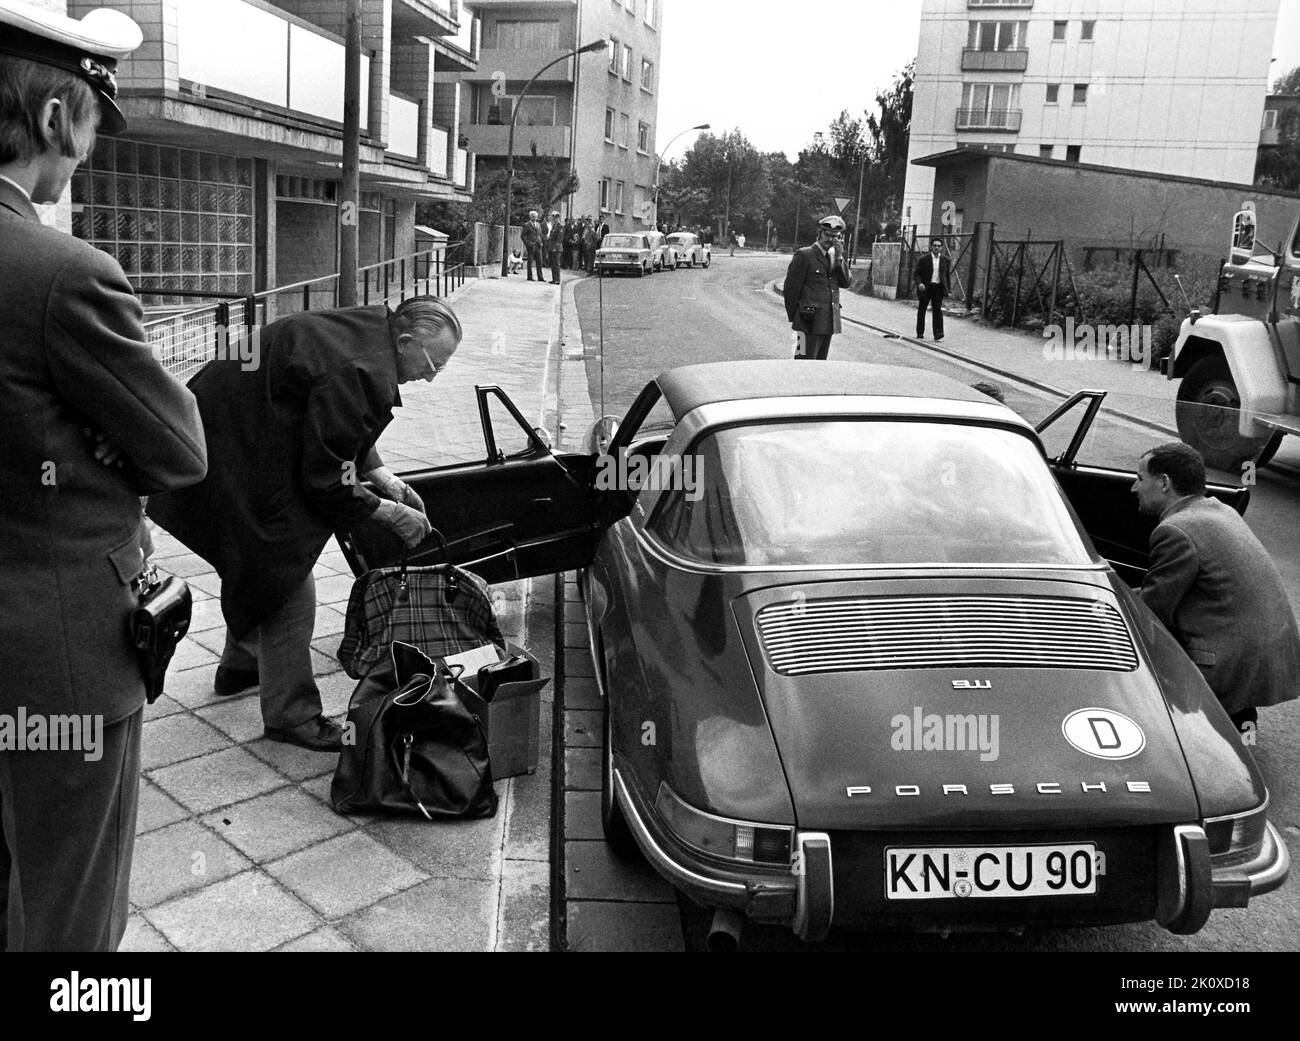 Kriminalbeams untersucht am 01.06.1972 im Frankfurter Stadtteil Dornbusch das Gepäck, das in einem Porsche mit Konstanzer Kennzeichen gefunden wurde. Das Wagen wurde von den vier Mitgliedern der Baader-Meinhof-Gruppe benutzt, die am Morgen des 01.06.1972 von der Polizei festgenommen wurden. Bei den Verhafteten handelt es sich um Andreas Baader, Holger Meins und Jan-Carl Raspe. Ein vierter Vermächtiger konnte nicht identifiziert werden. Foto: Roland Witschel +++(c) dpa - Report+++ [dpabilderarchiv] Stockfoto